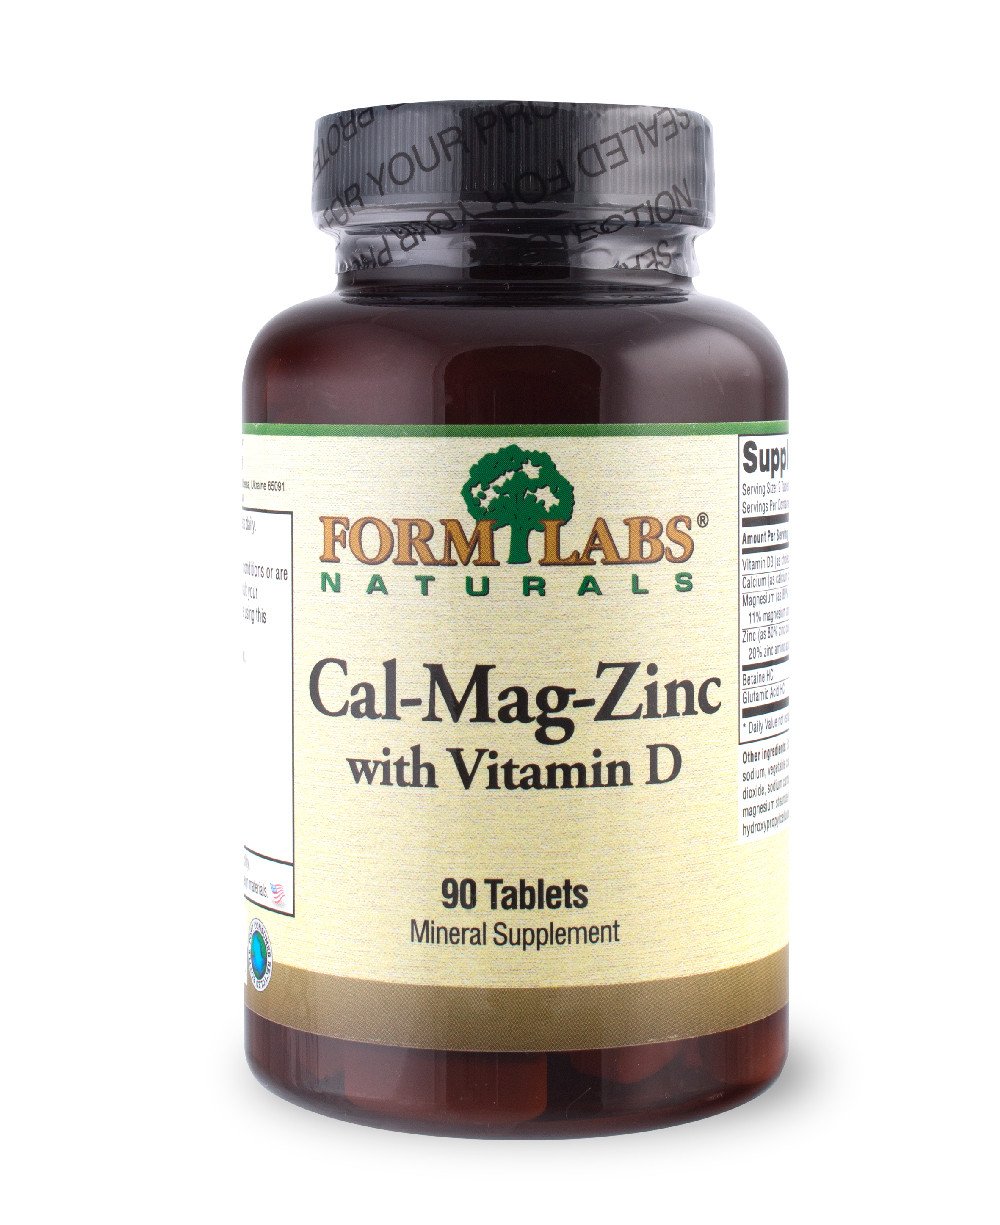 Cal-Mag-Zinc+Vitamin D, 90 шт, Form Labs Naturals. Витаминно-минеральный комплекс. Поддержание здоровья Укрепление иммунитета 